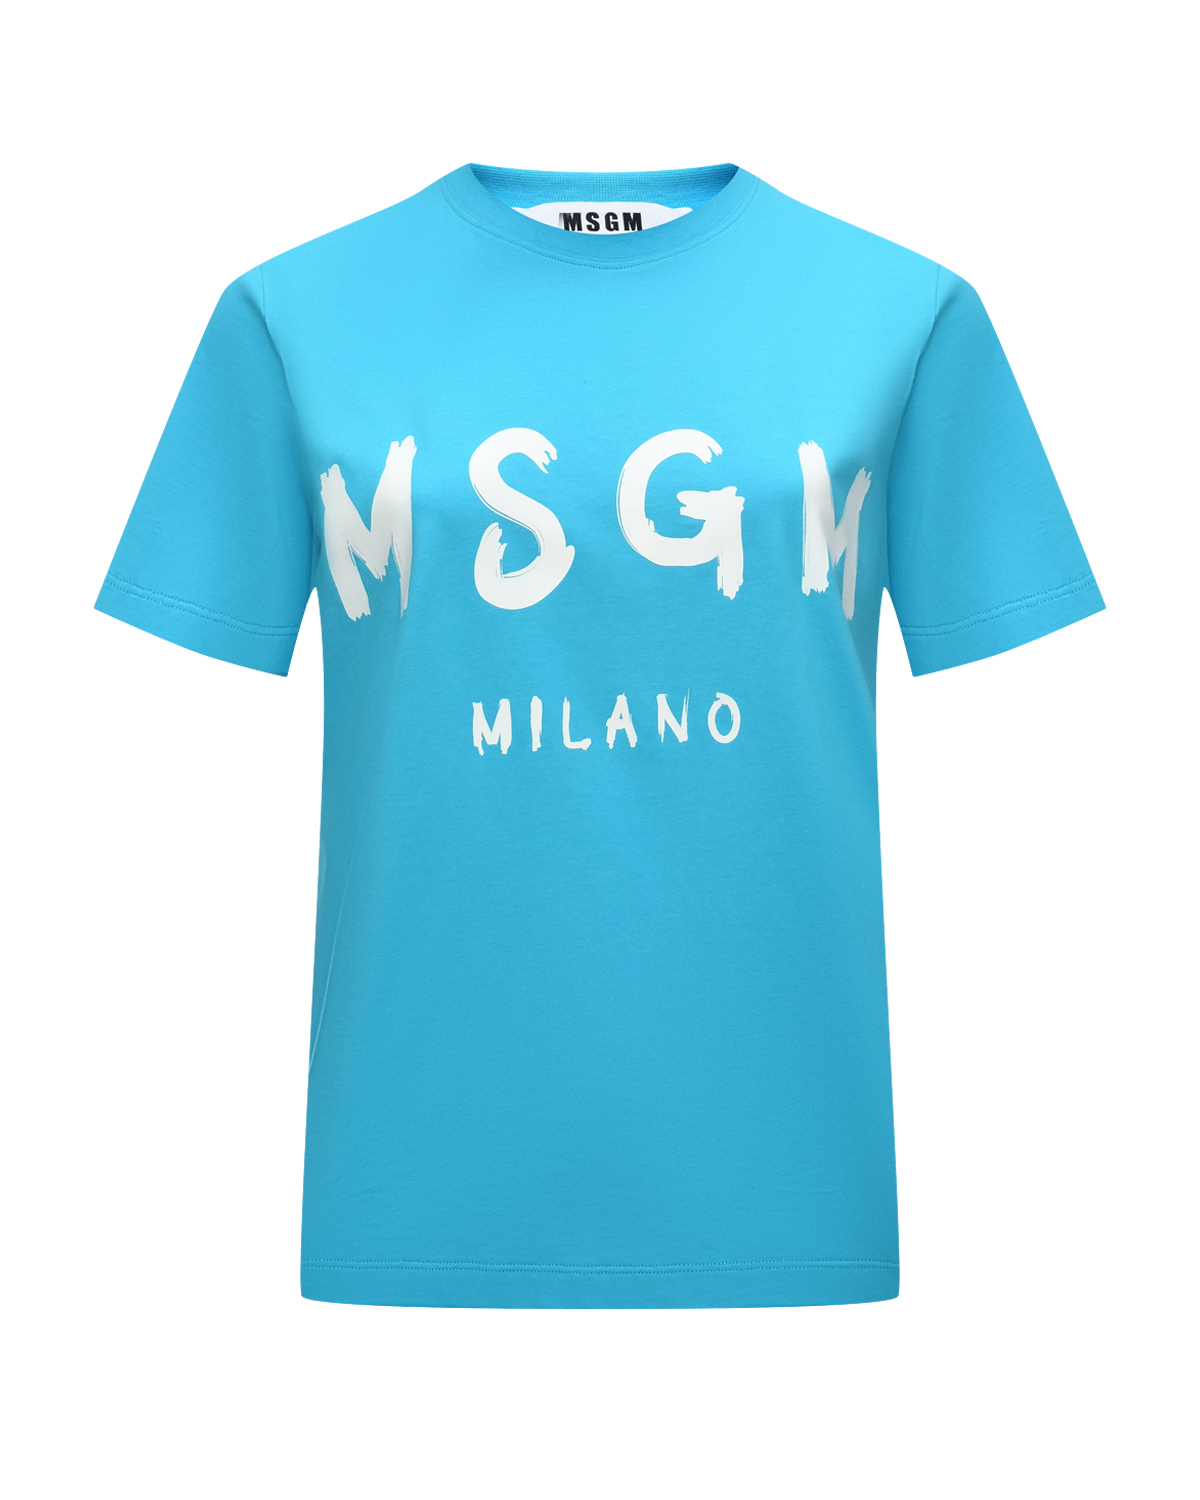 Футболка с крупным лого, голубая MSGM футболка с леопардовым лого msgm